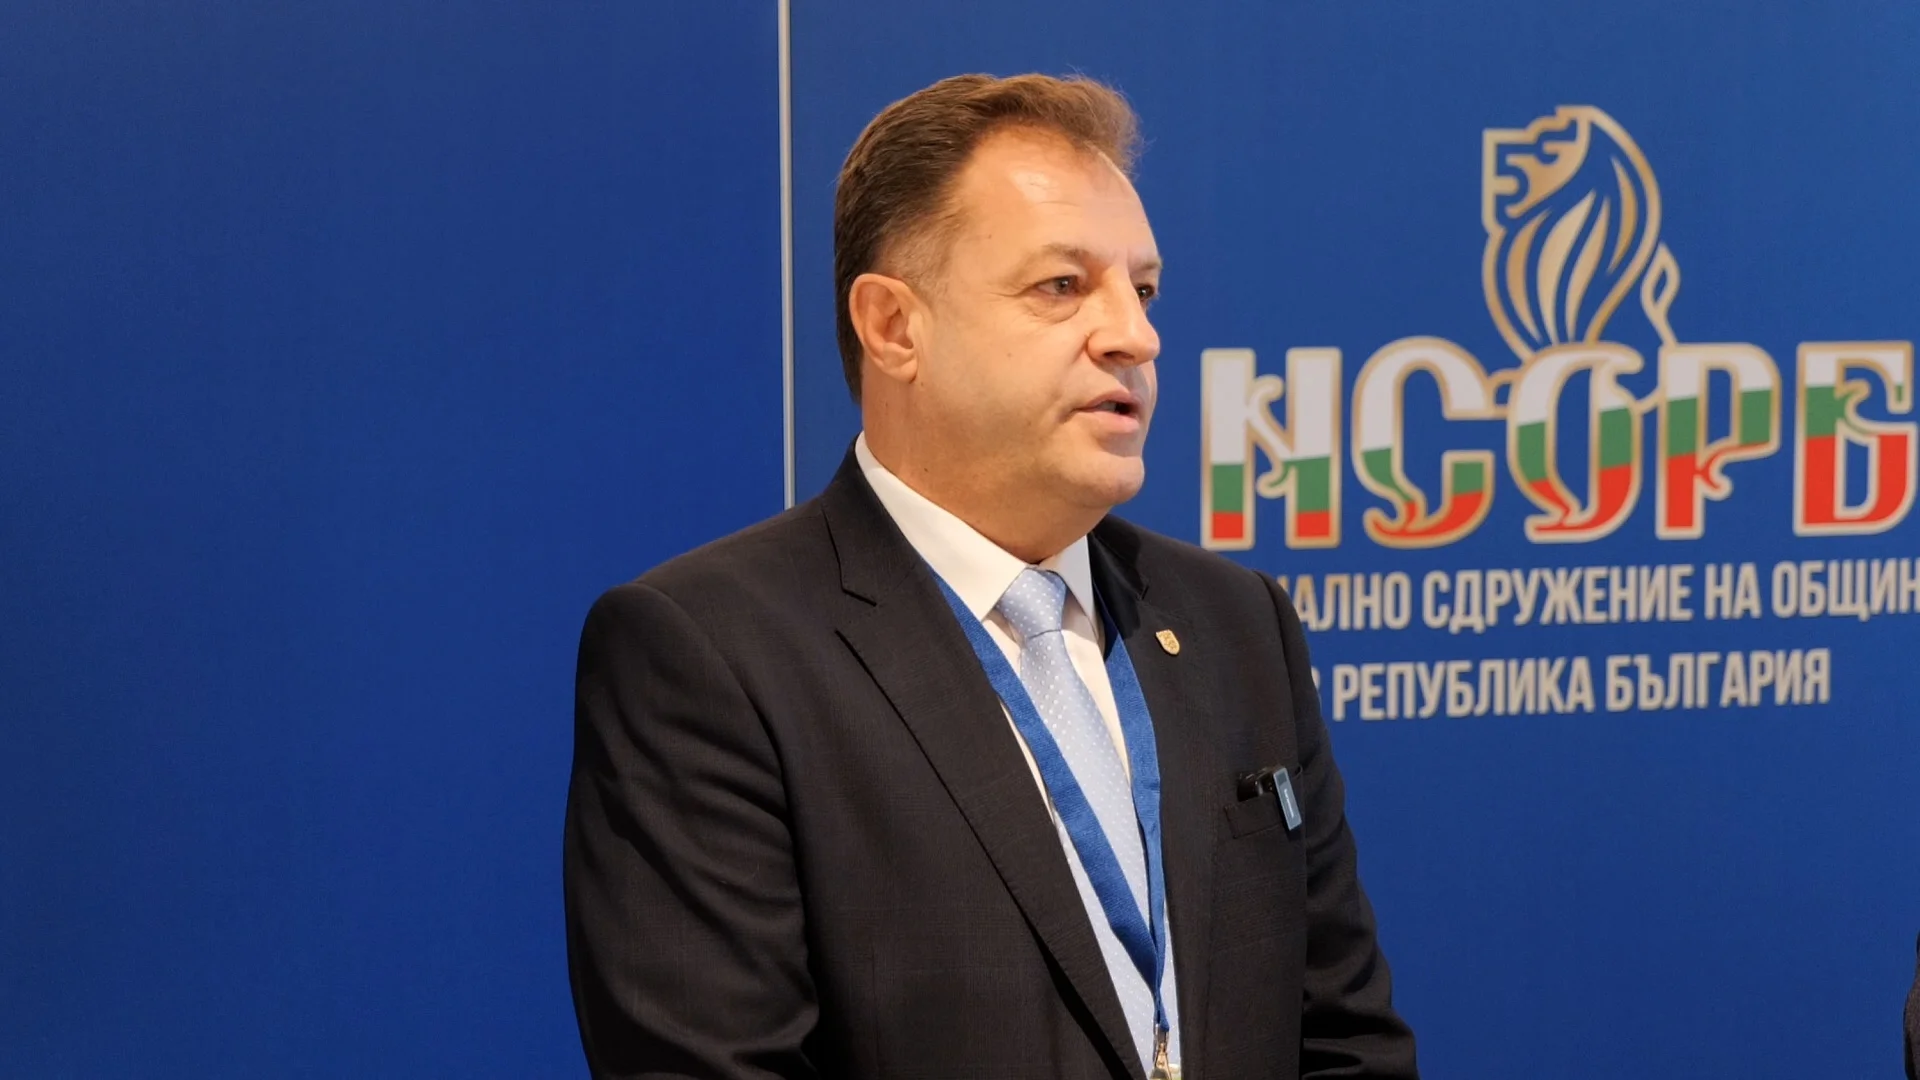 Даниел Панов: "Хемус" остава с приоритет за общините от Северна България (ВИДЕО)